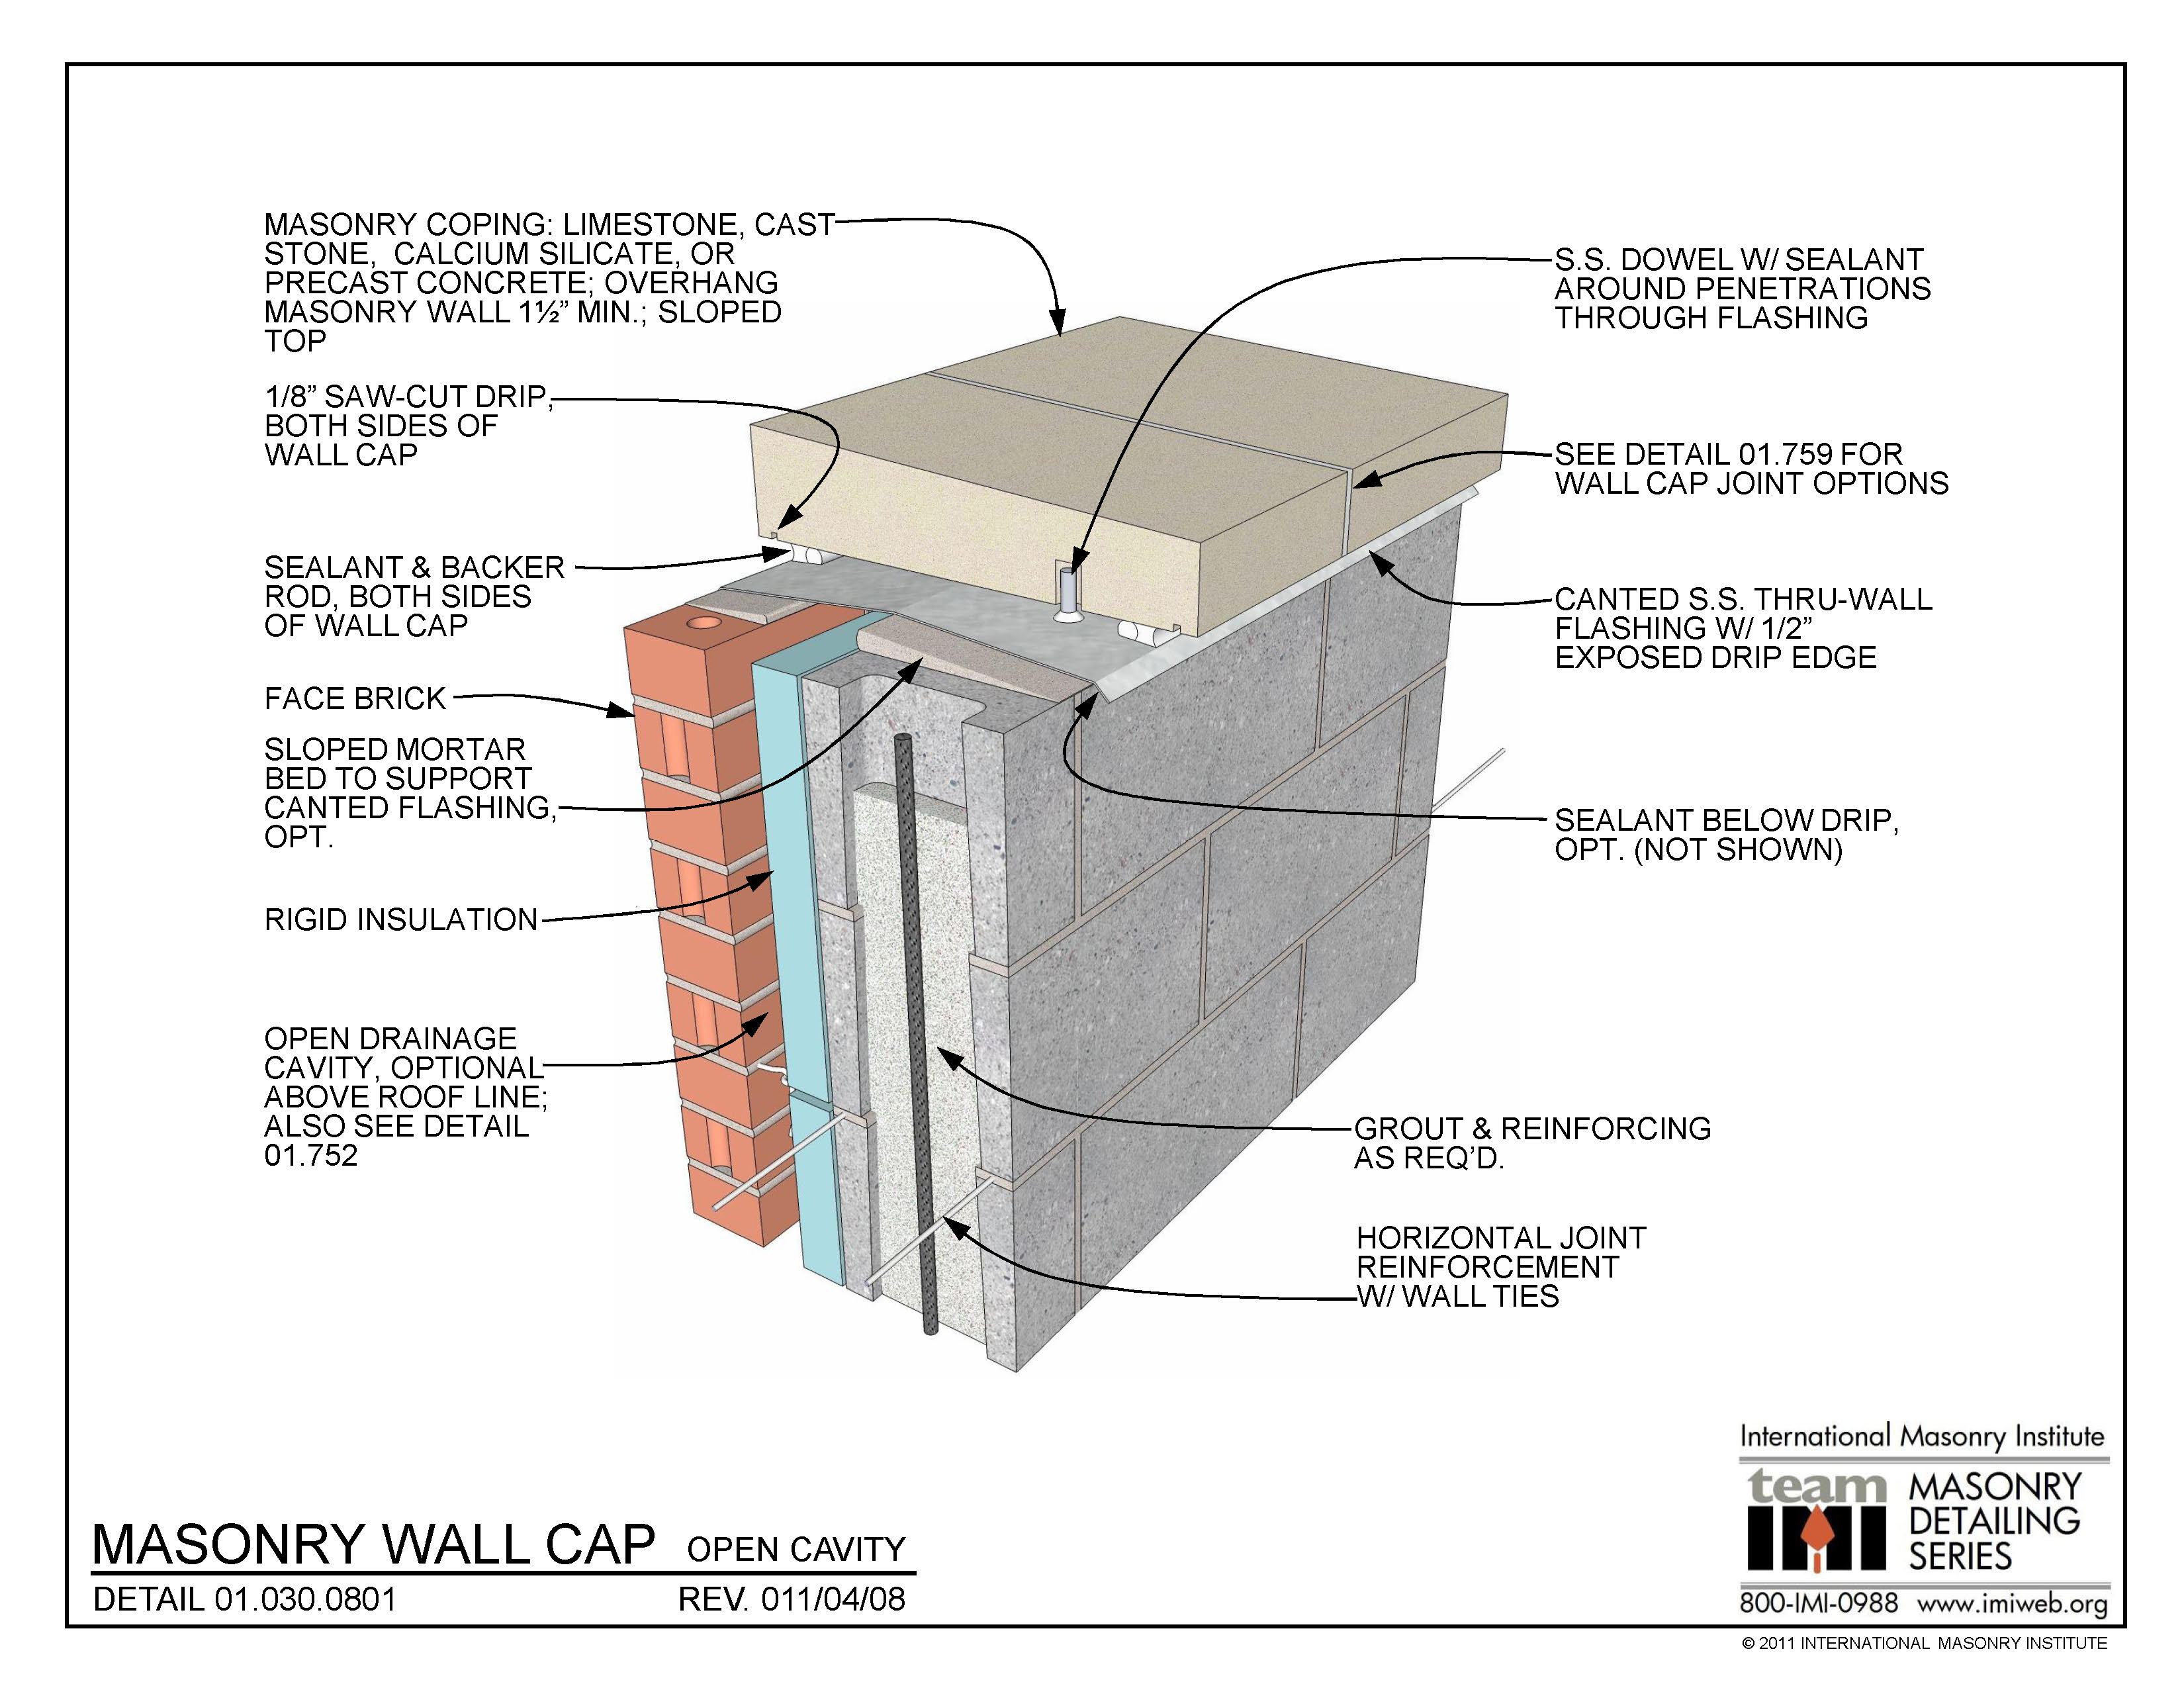 01.030.0801: Masonry Wall Cap - Open Cavity | International Masonry ...